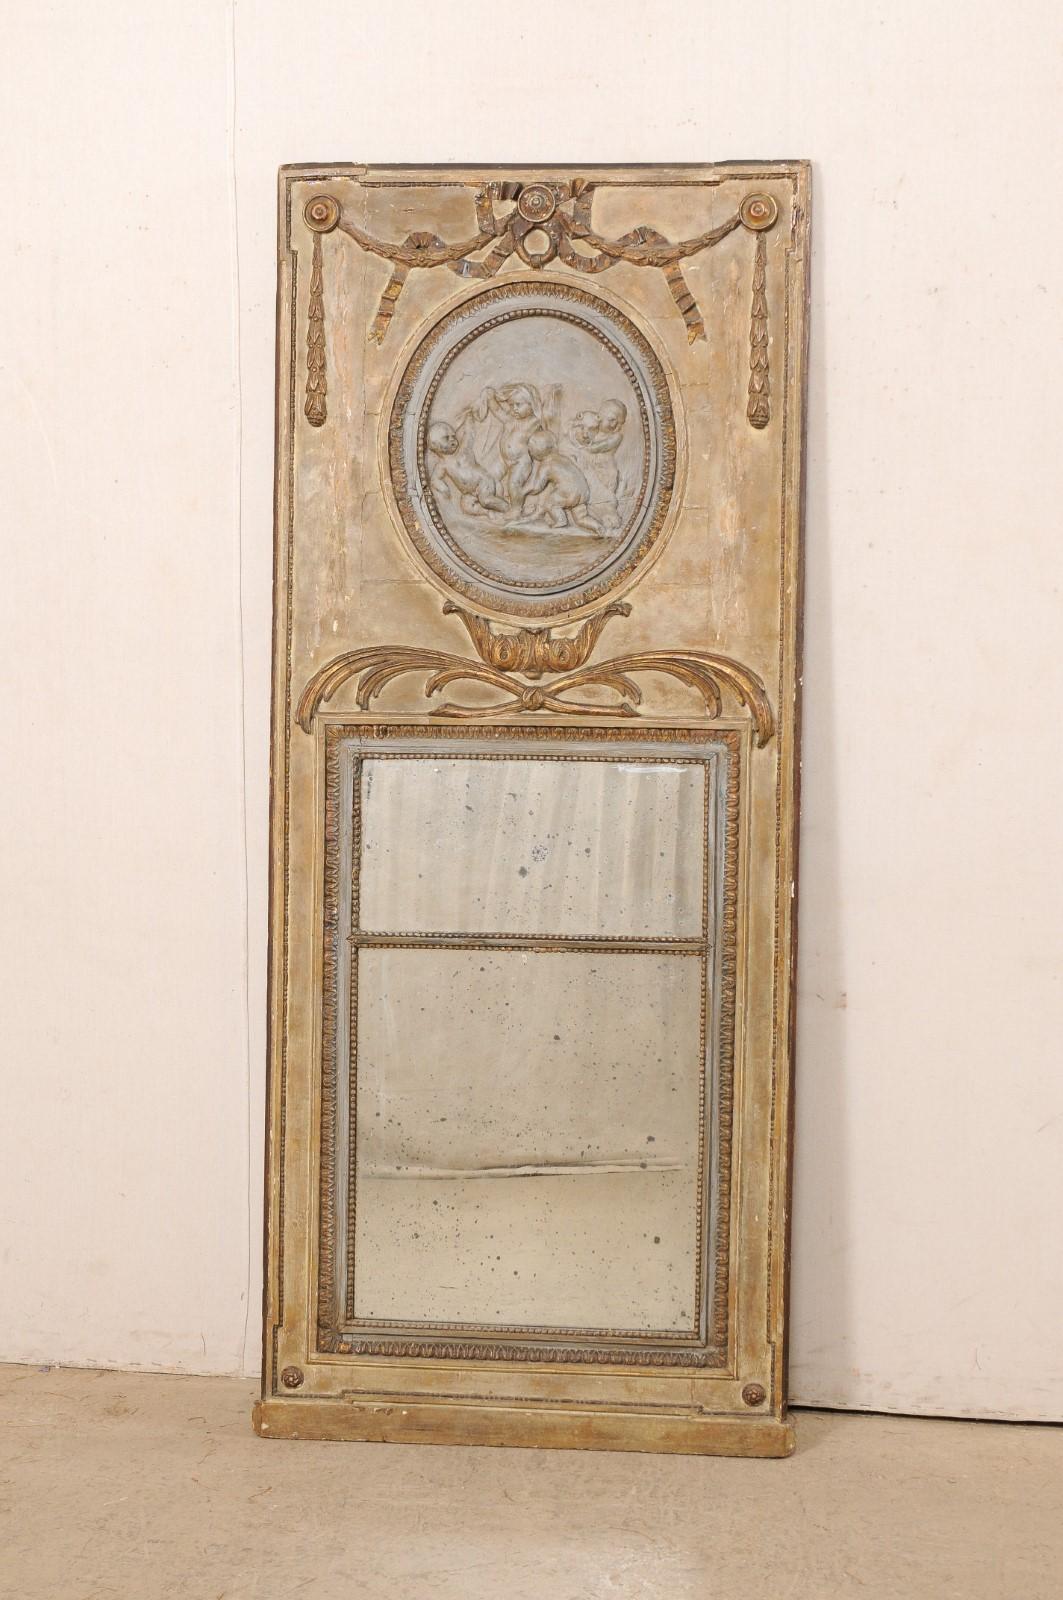 Miroir trumeau en bois sculpté et peint de style néoclassique français du XVIIIe siècle. Ce miroir ancien de France a une forme rectangulaire haute, typique du design trumeau, avec une partie supérieure en bois ornée de nœuds papillons et de